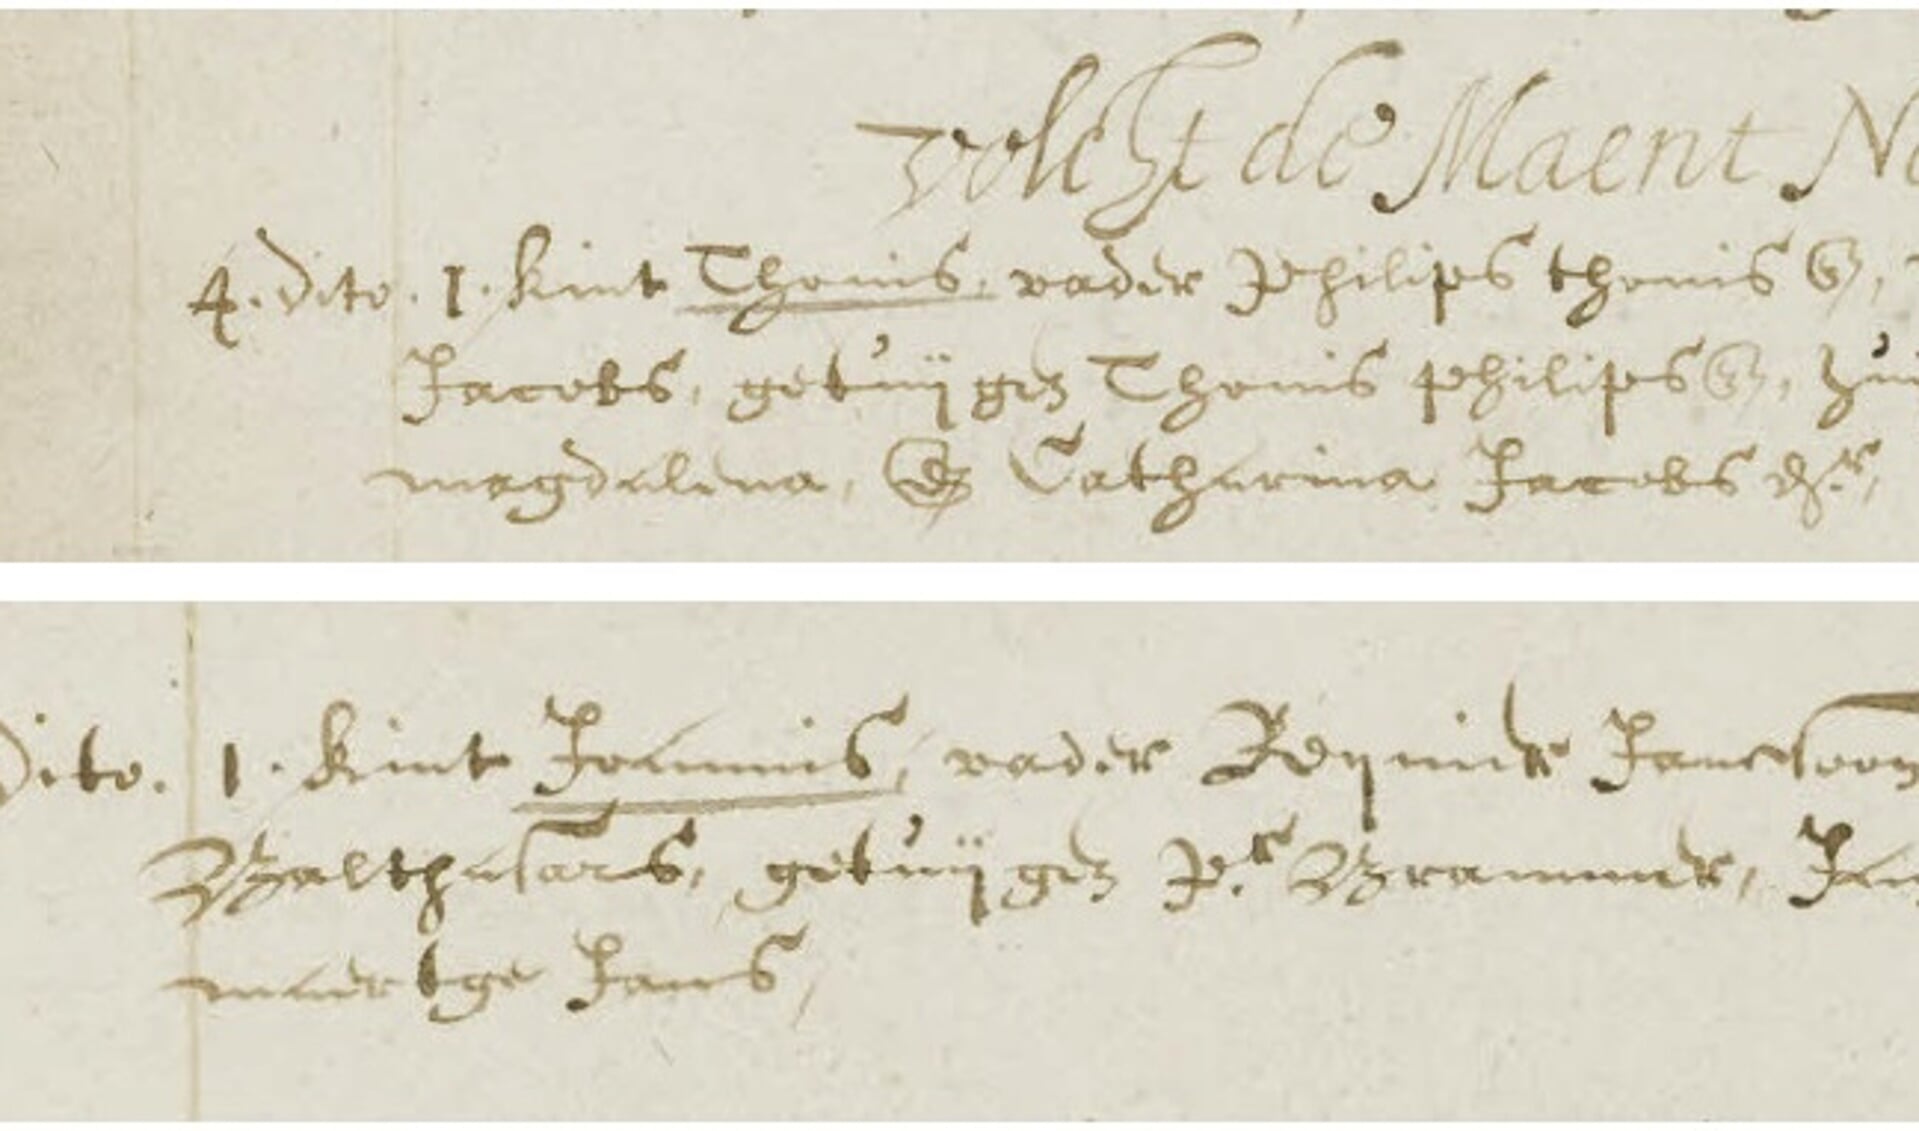 De doopinschrijvingen van Antoni van Leeuwenhoek (boven) en Johannes Vermeer (onder) 
staan vermeld op dezelfde pagina van het doopregister.